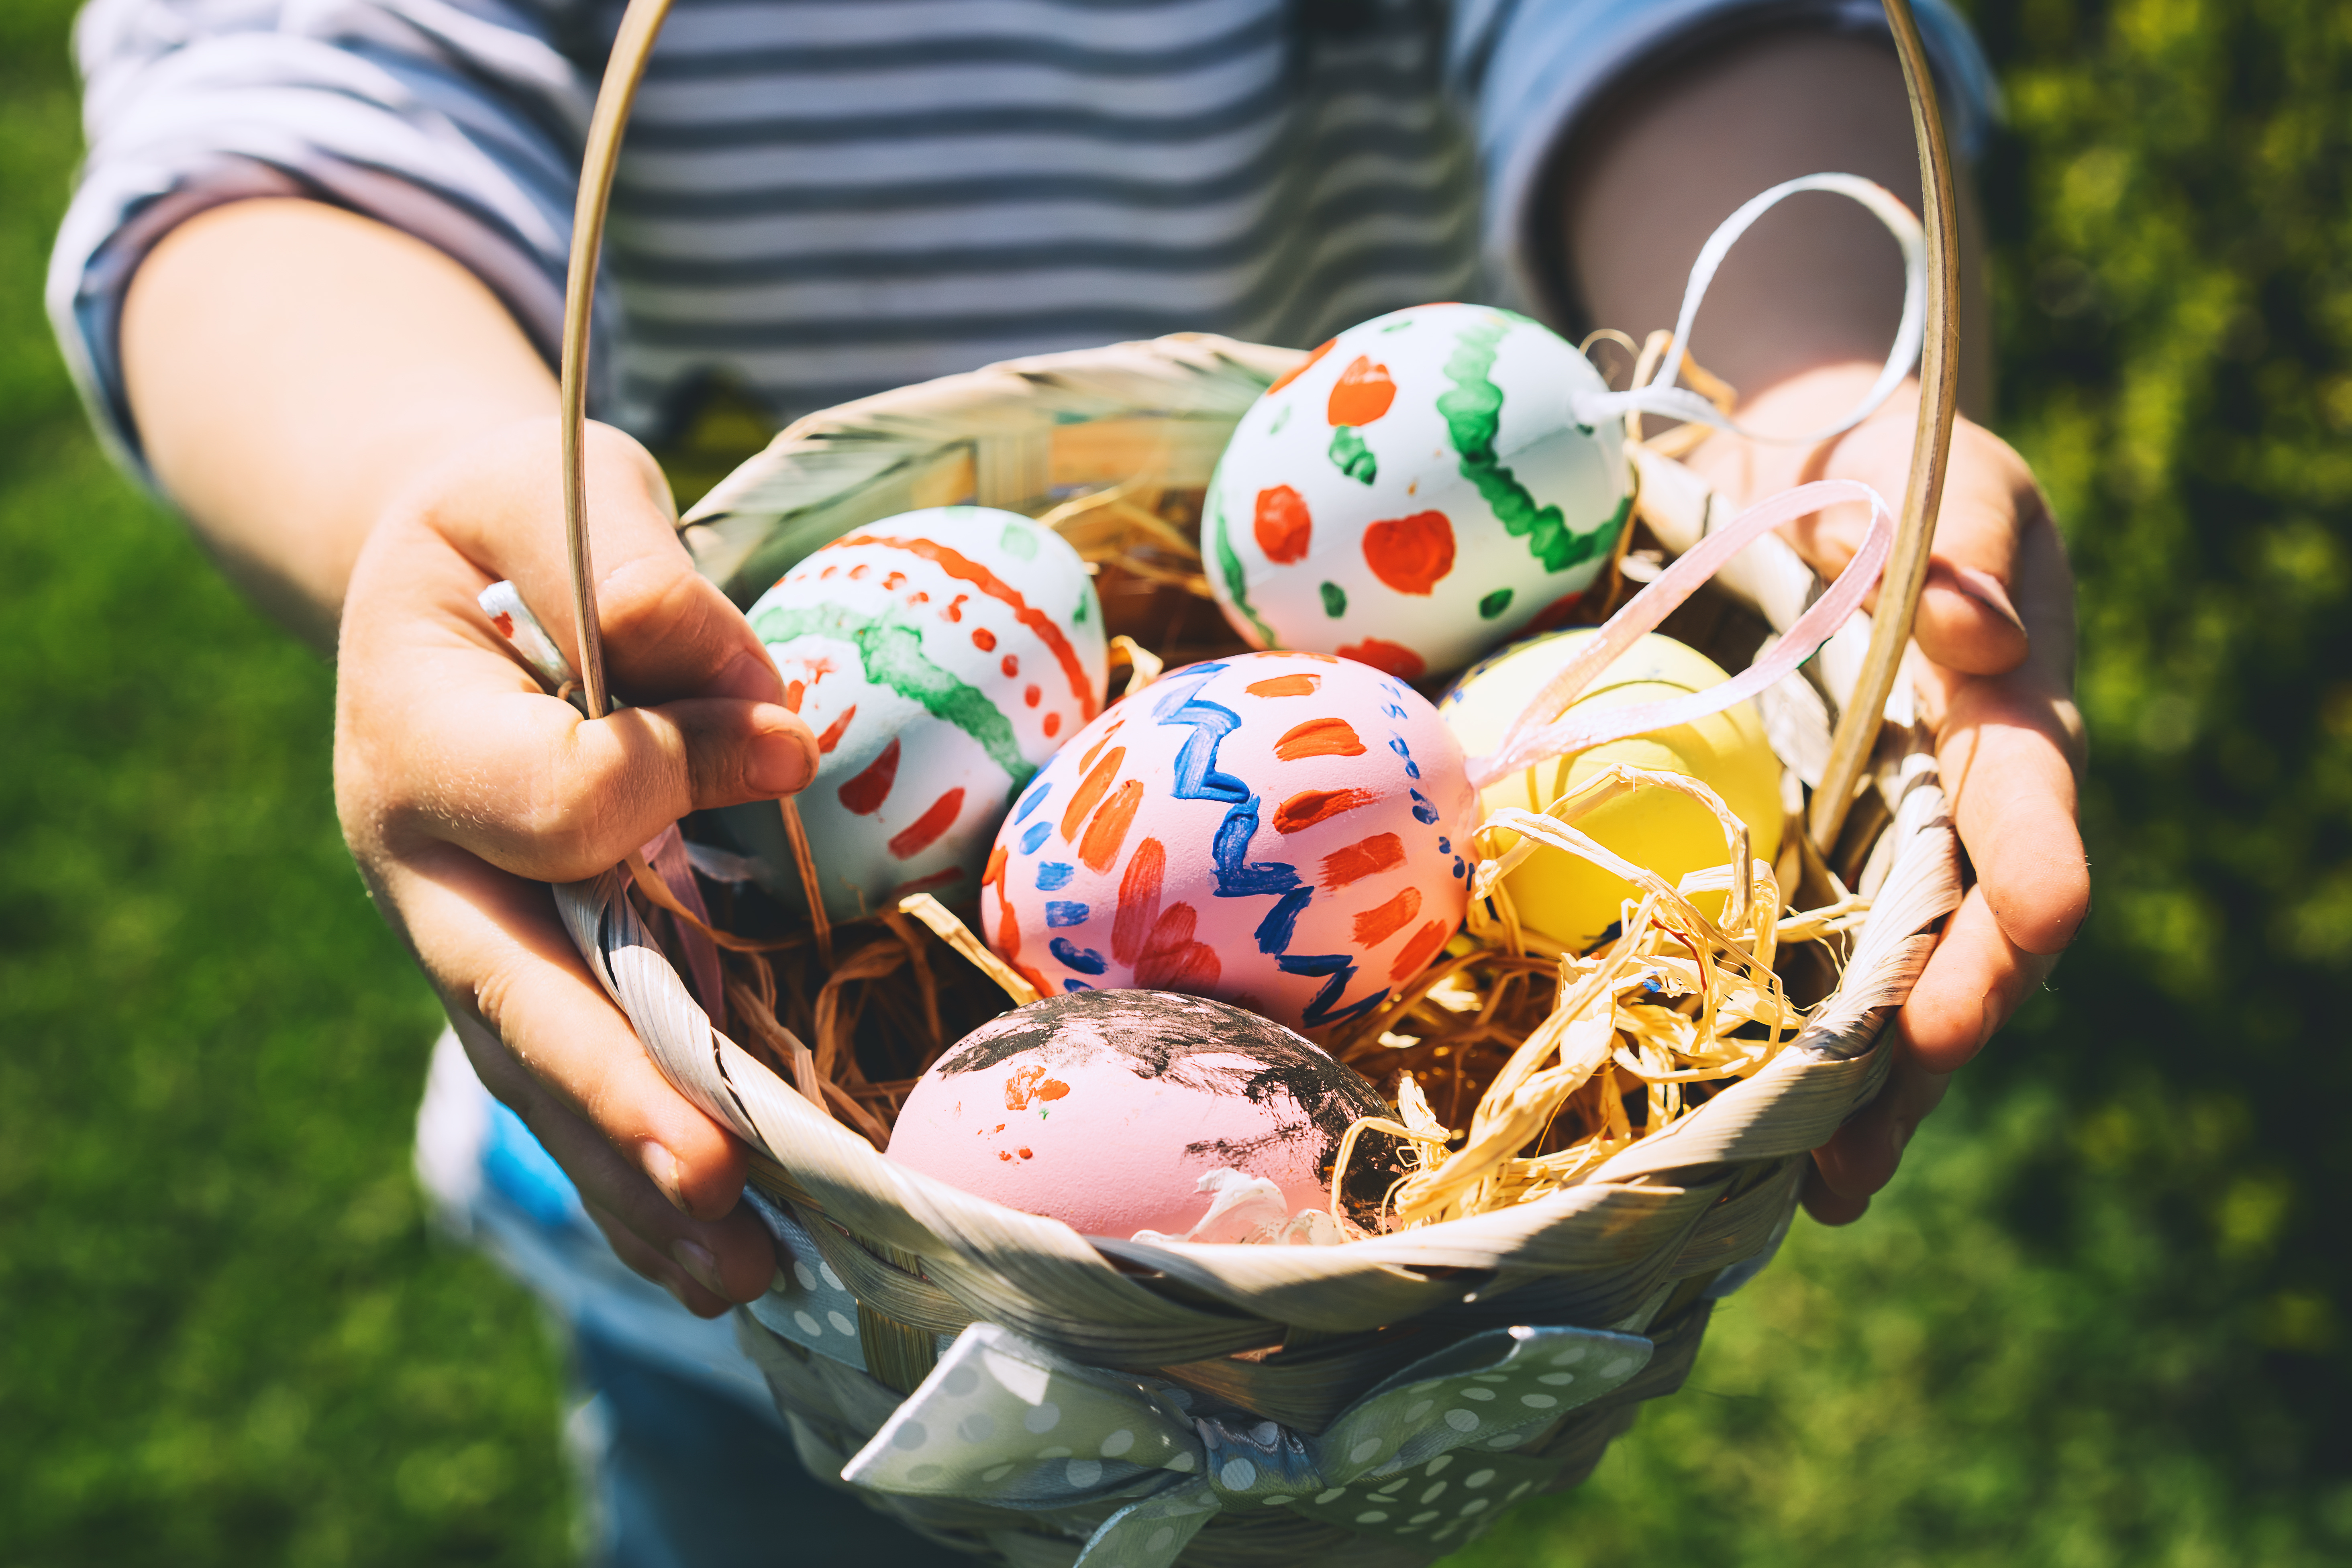 Cómo pintar y decorar huevos de Pascua